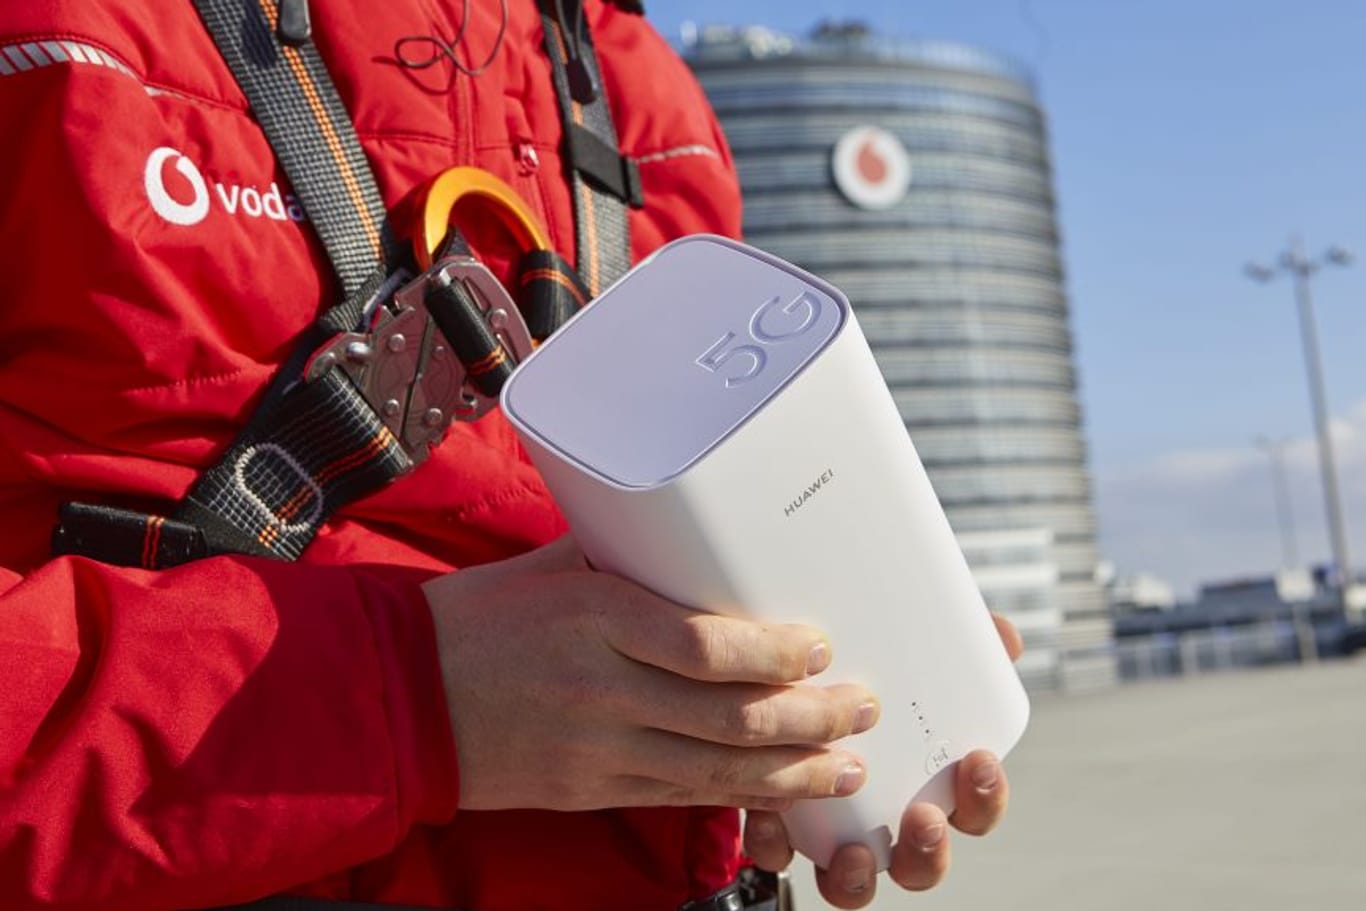 Ein Vodafone-Mitarbeiter hält einen "GigaCube 5G": Der mobile Router soll schnelle DSL-Leitungen zu Hause ersetzen können.